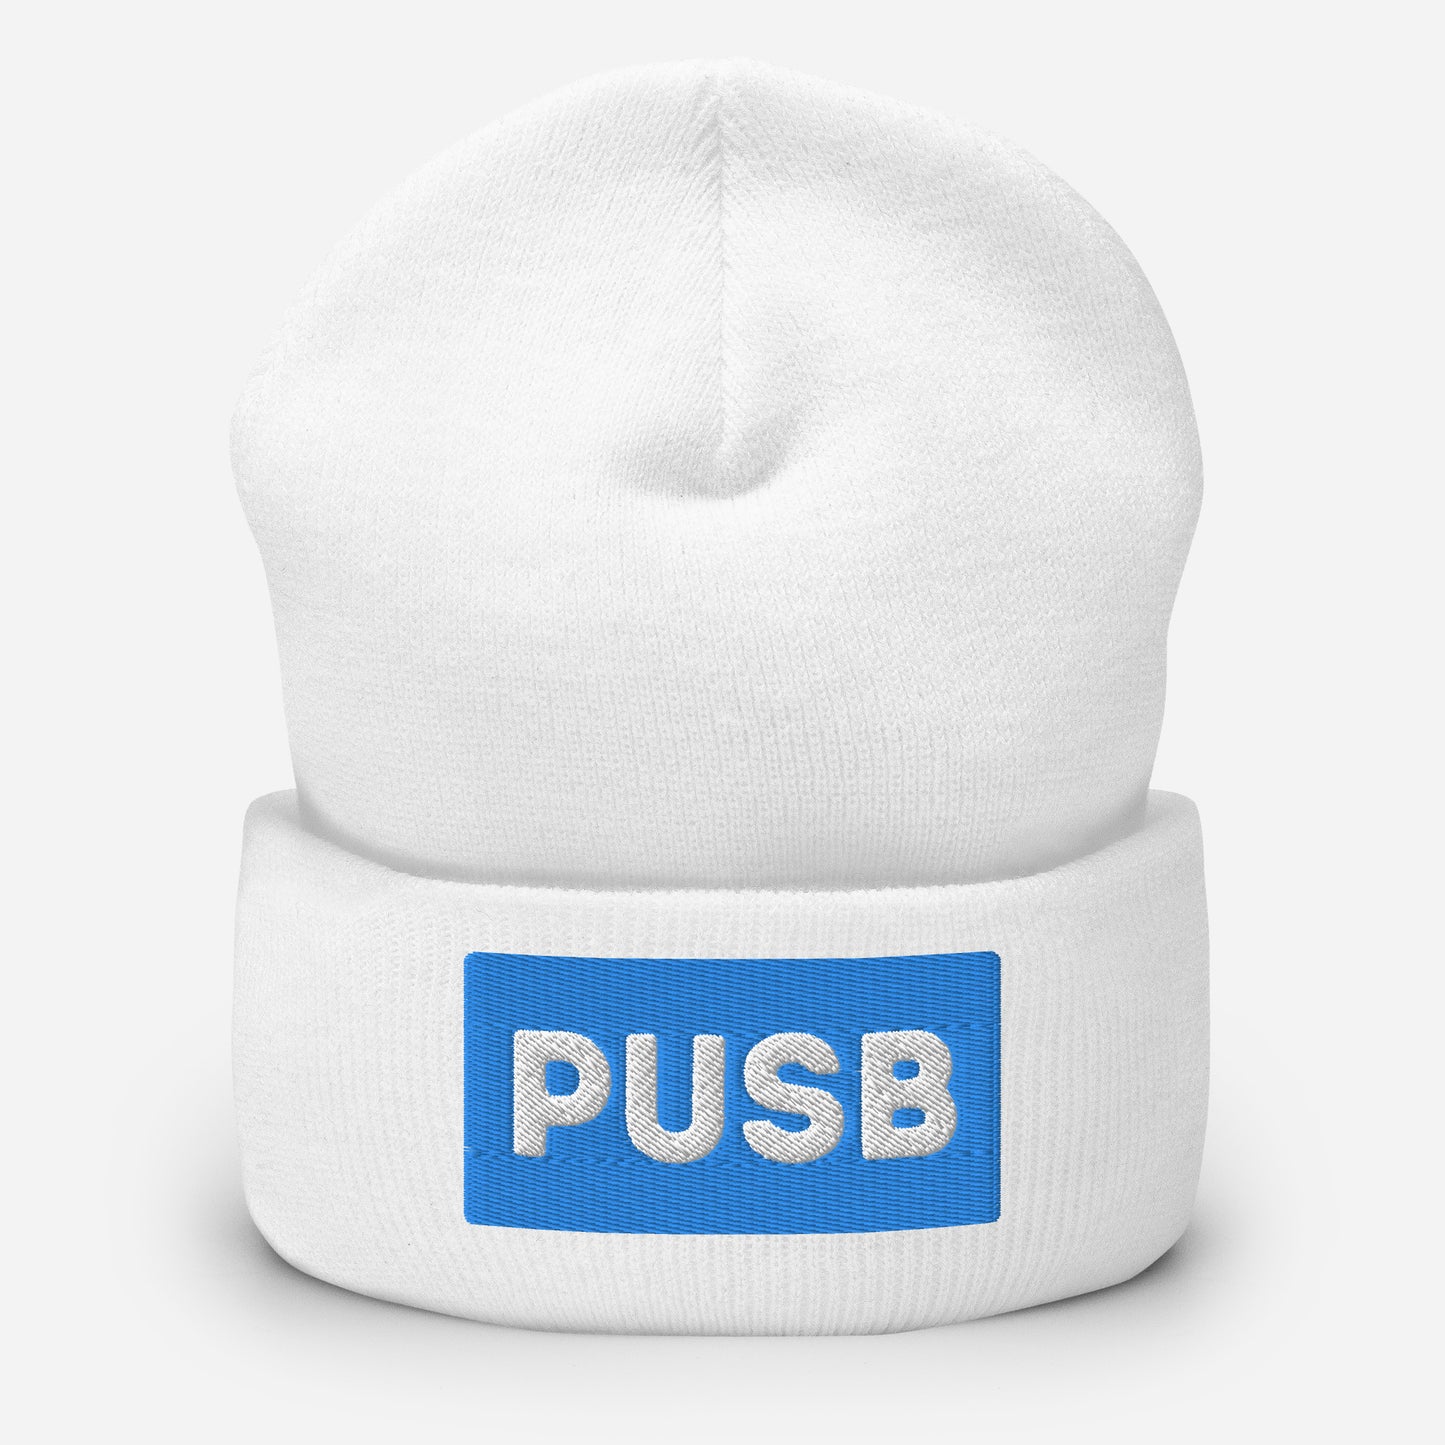 PUSB Cuffed Beanie Hat